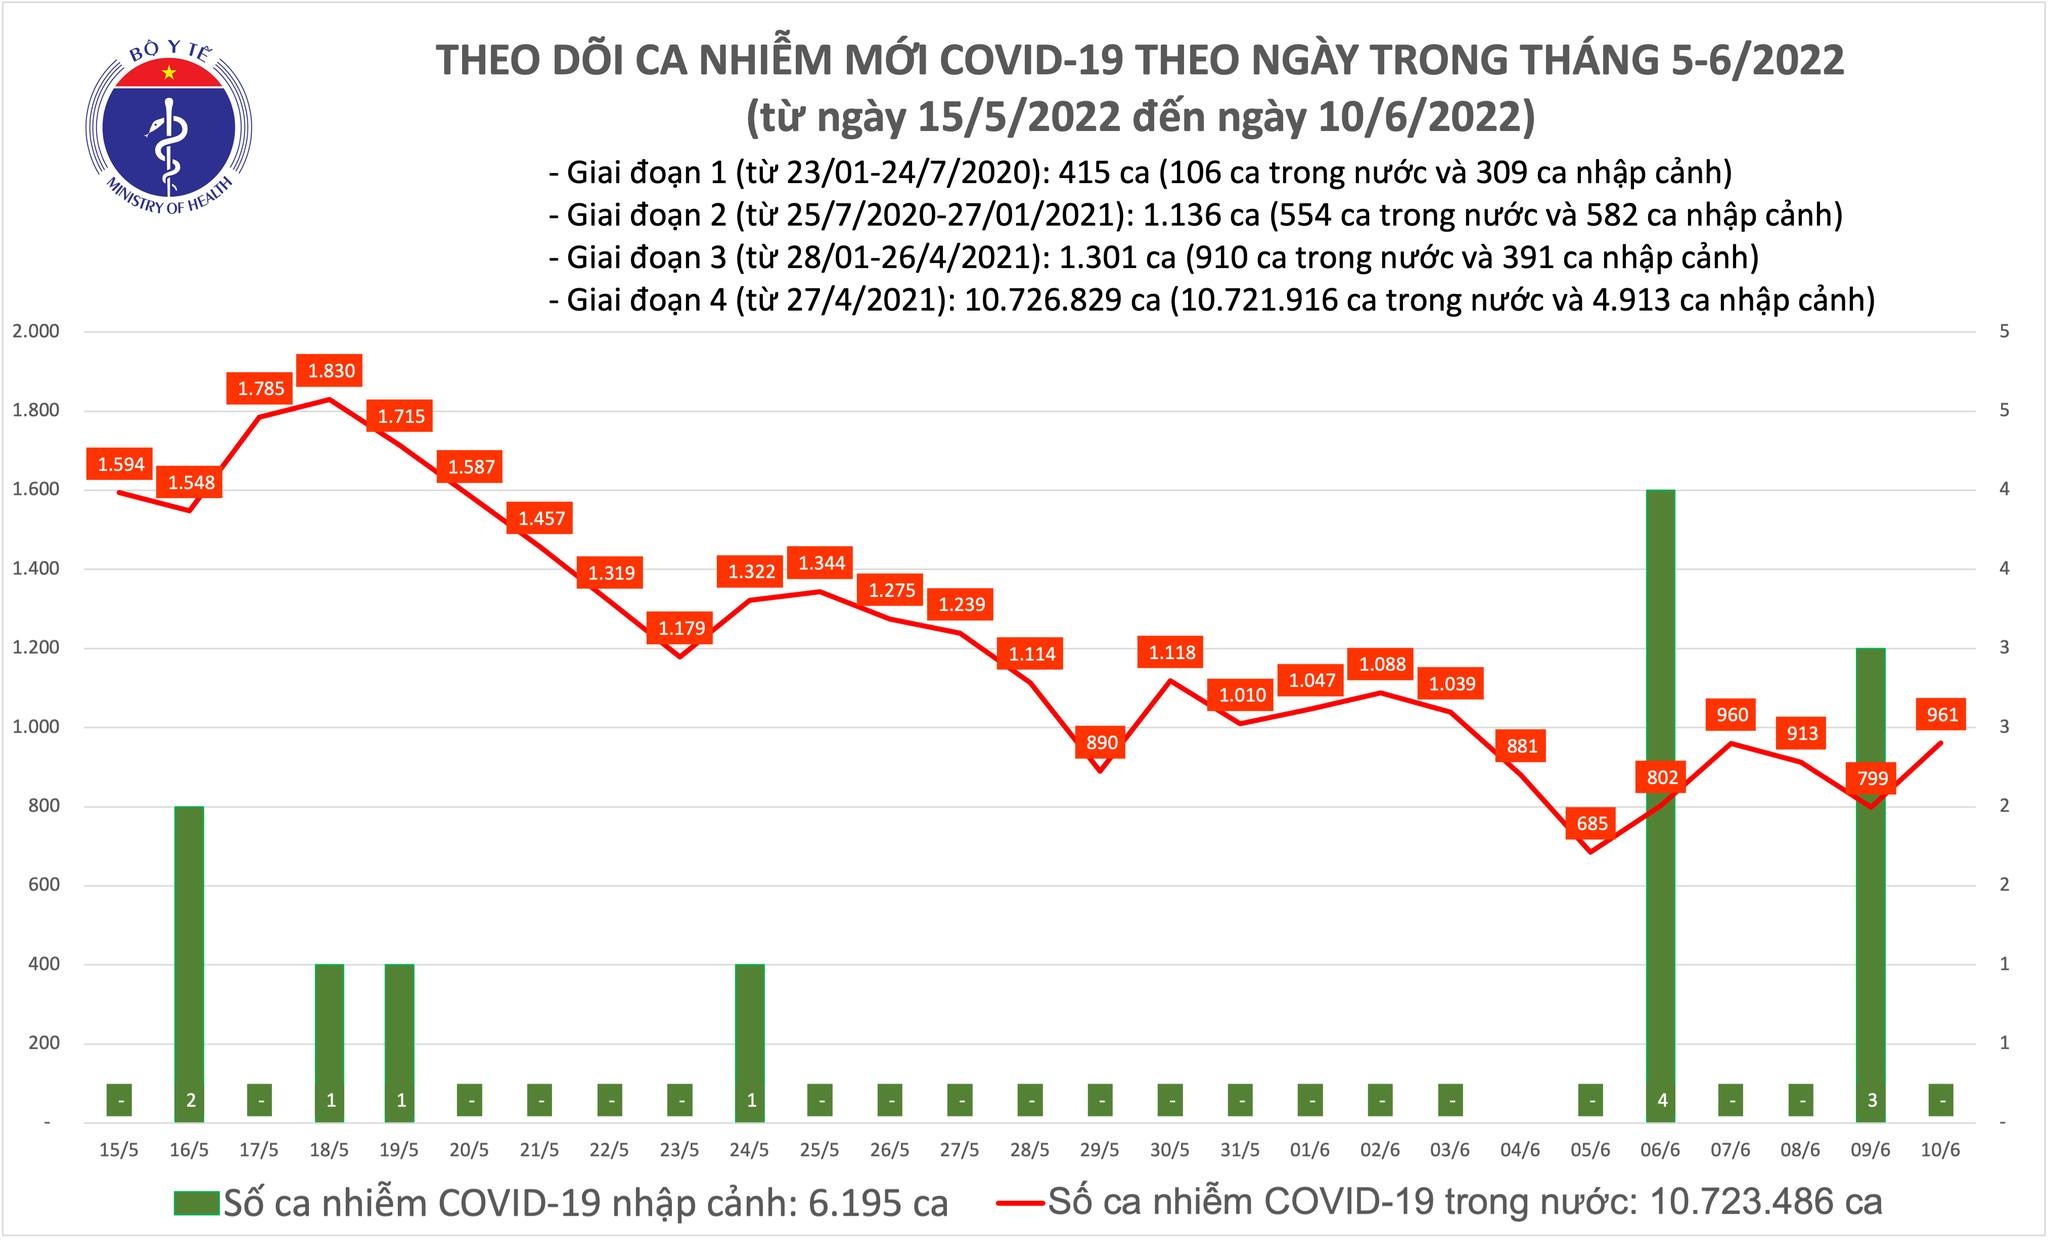 Việt Nam ghi nhận 961 ca mắc mới COVID-19 trong ngày 10/6